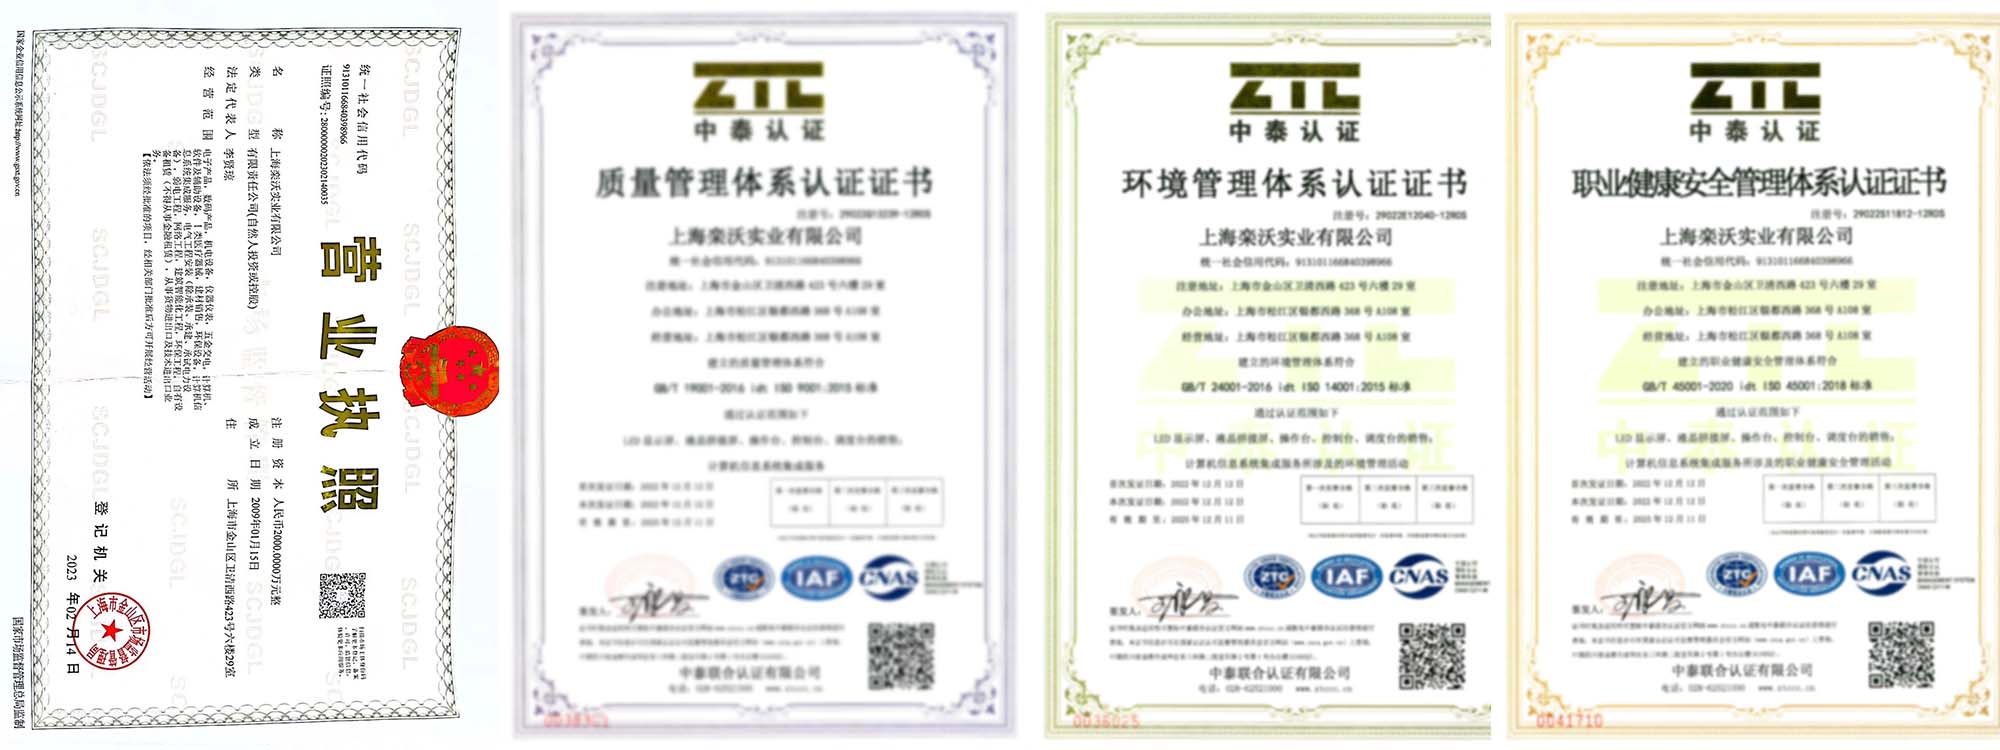 上海栾沃实业有限公司通过相关管理体系认证